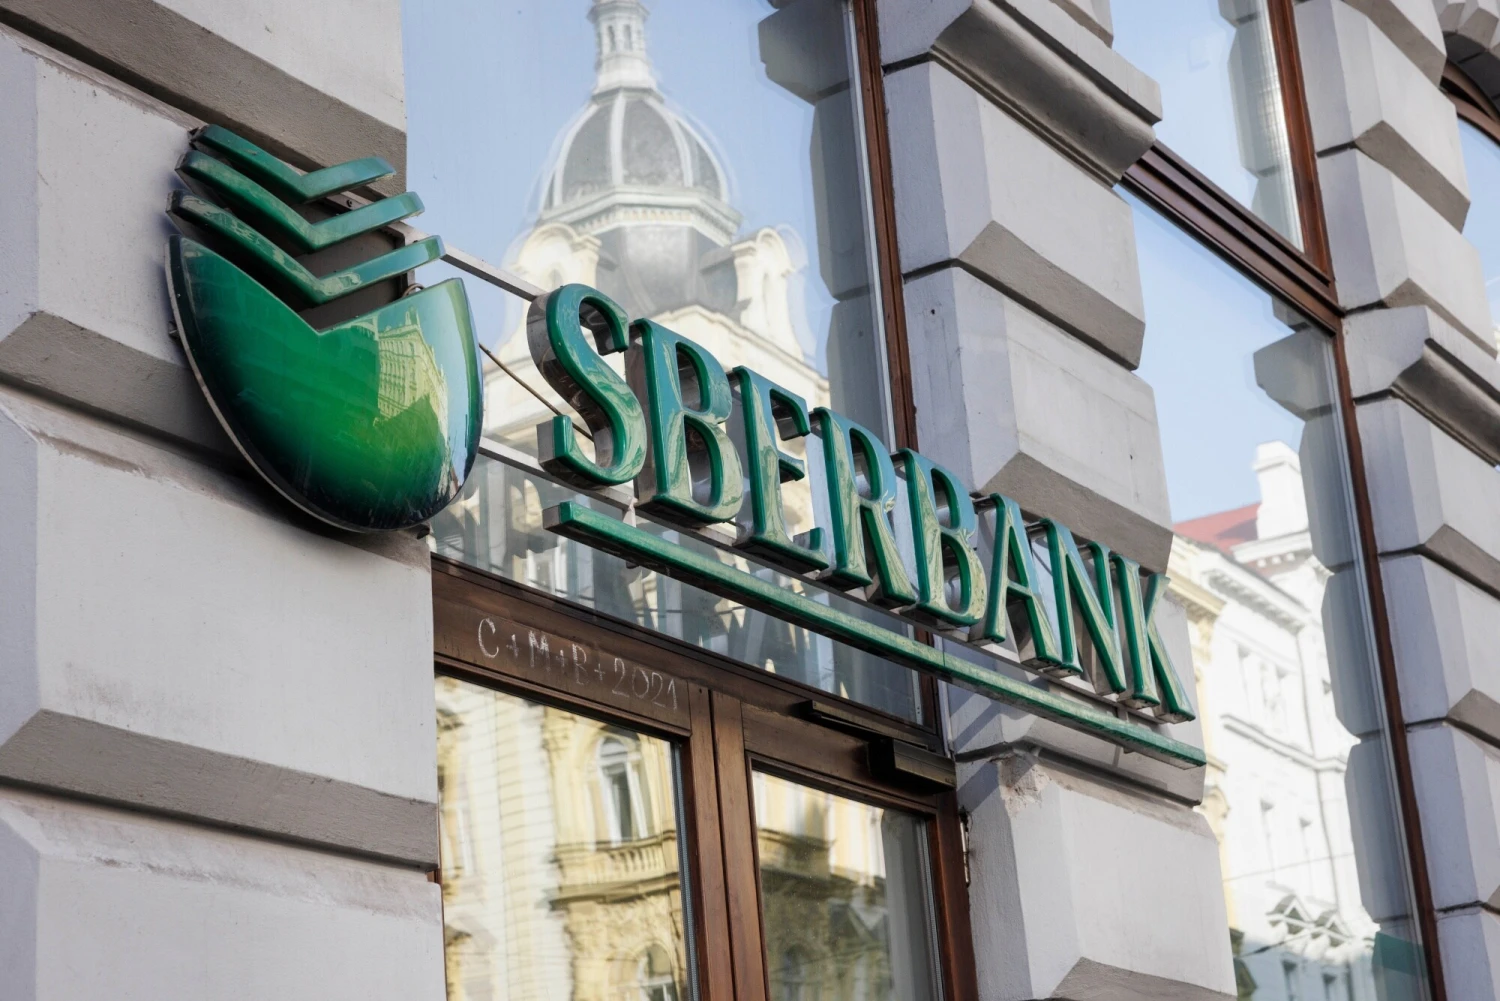 Sberbank vyplatí za loňský rok rekordní dividendu. Rozdělí 191 miliard korun